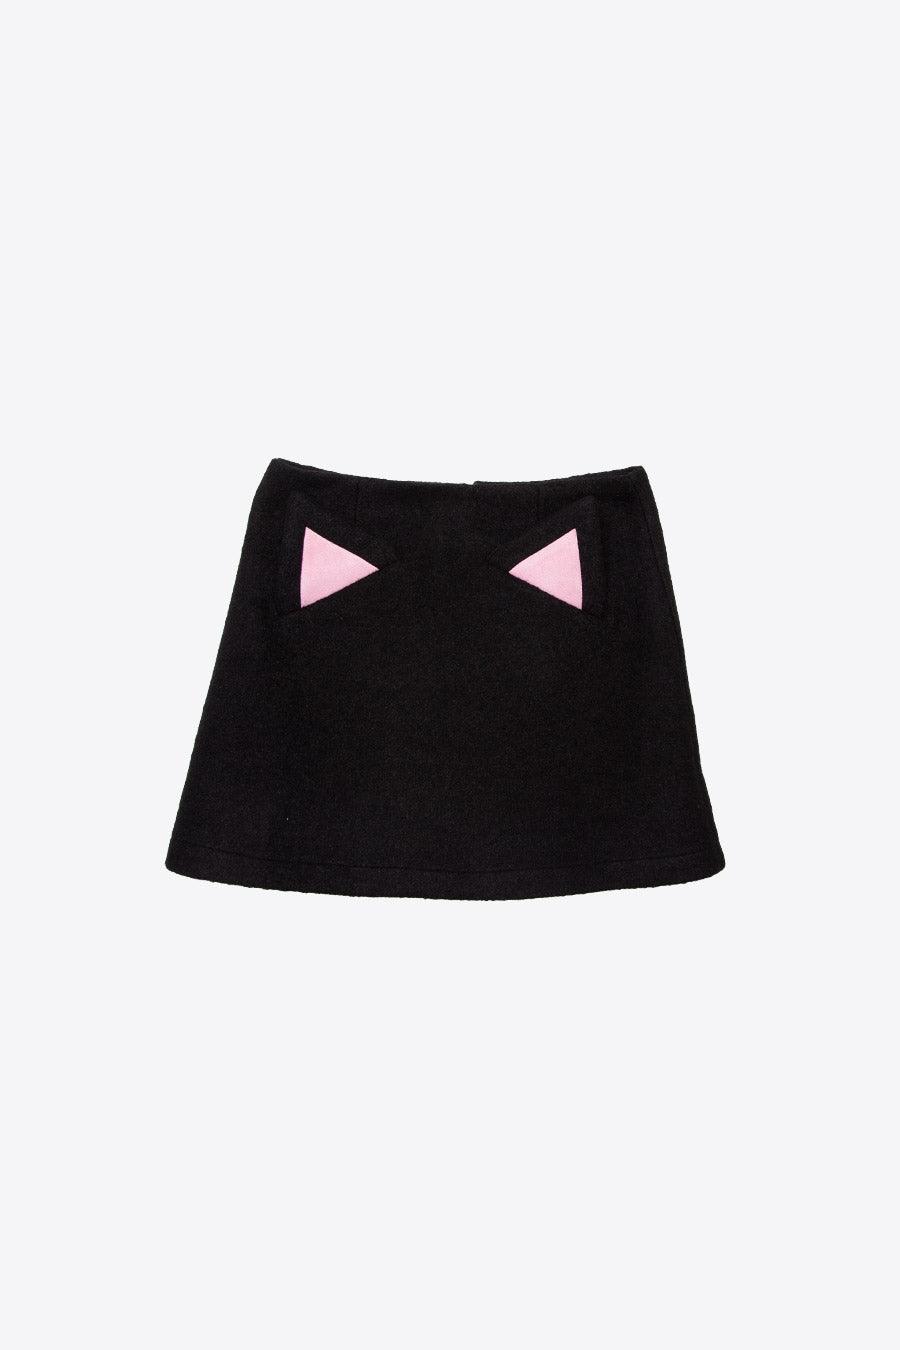 Minifalda Gato - ECRU